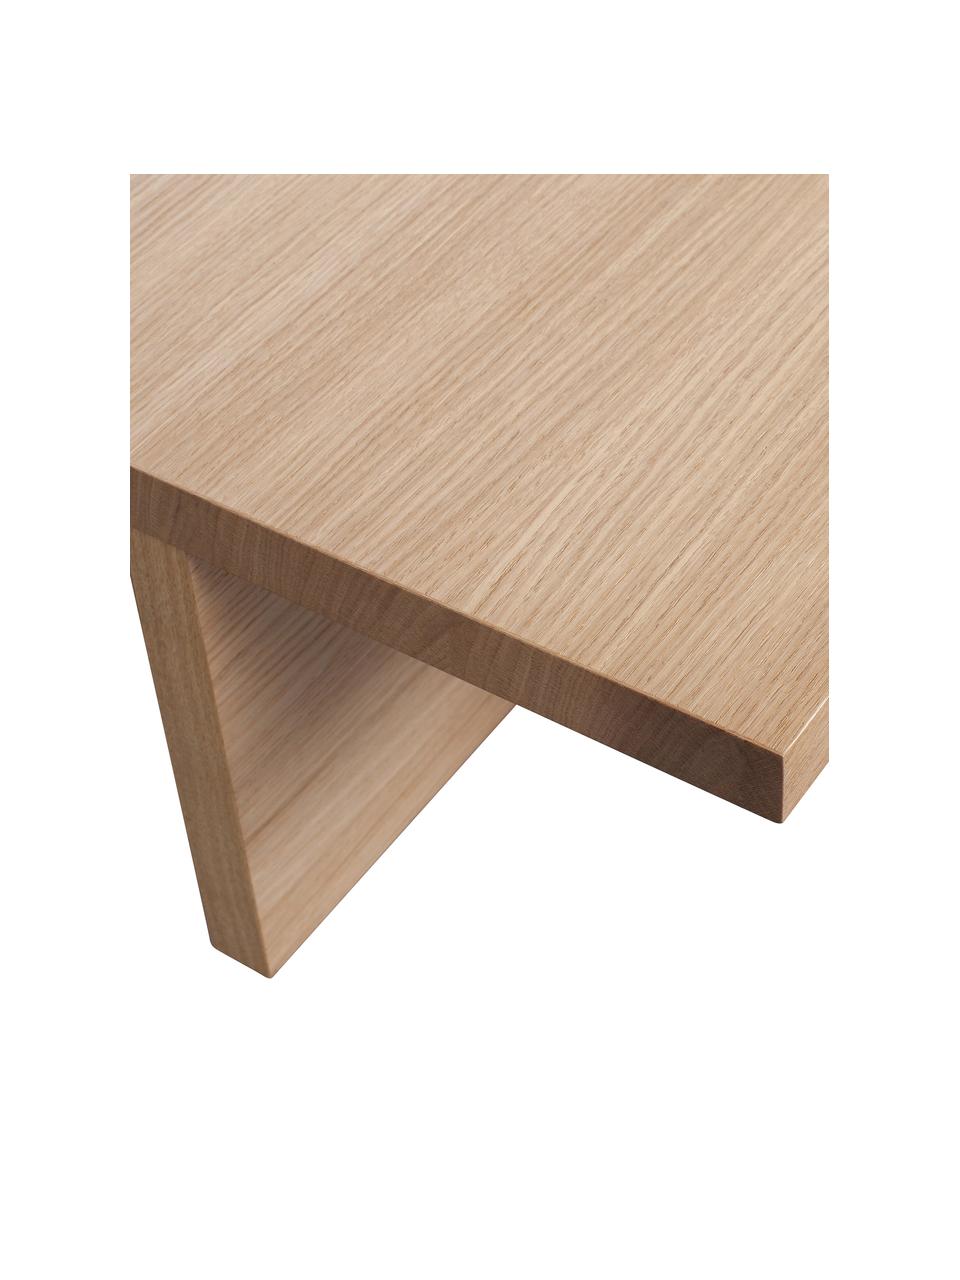 Moderní konferenční stolek Angle, MDF deska (dřevovláknitá deska střední hustoty) s dubovou dýhou, Světlé dřevo, Š 135 cm, V 27 cm